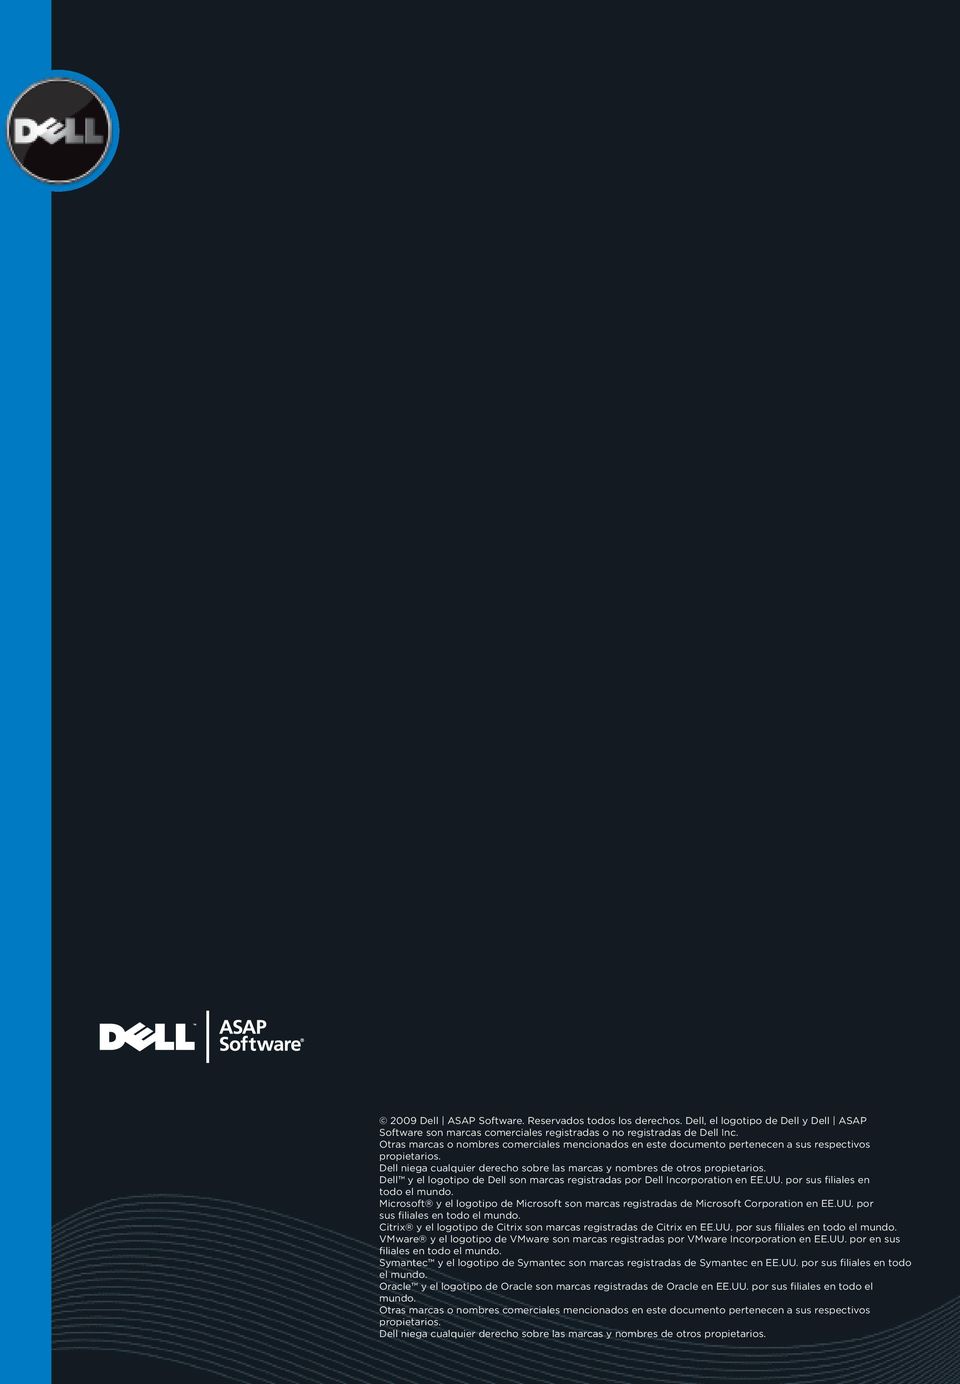 Dell y el logotipo de Dell son marcas registradas por Dell Incorporation en EE.UU. por sus filiales en todo el mundo.